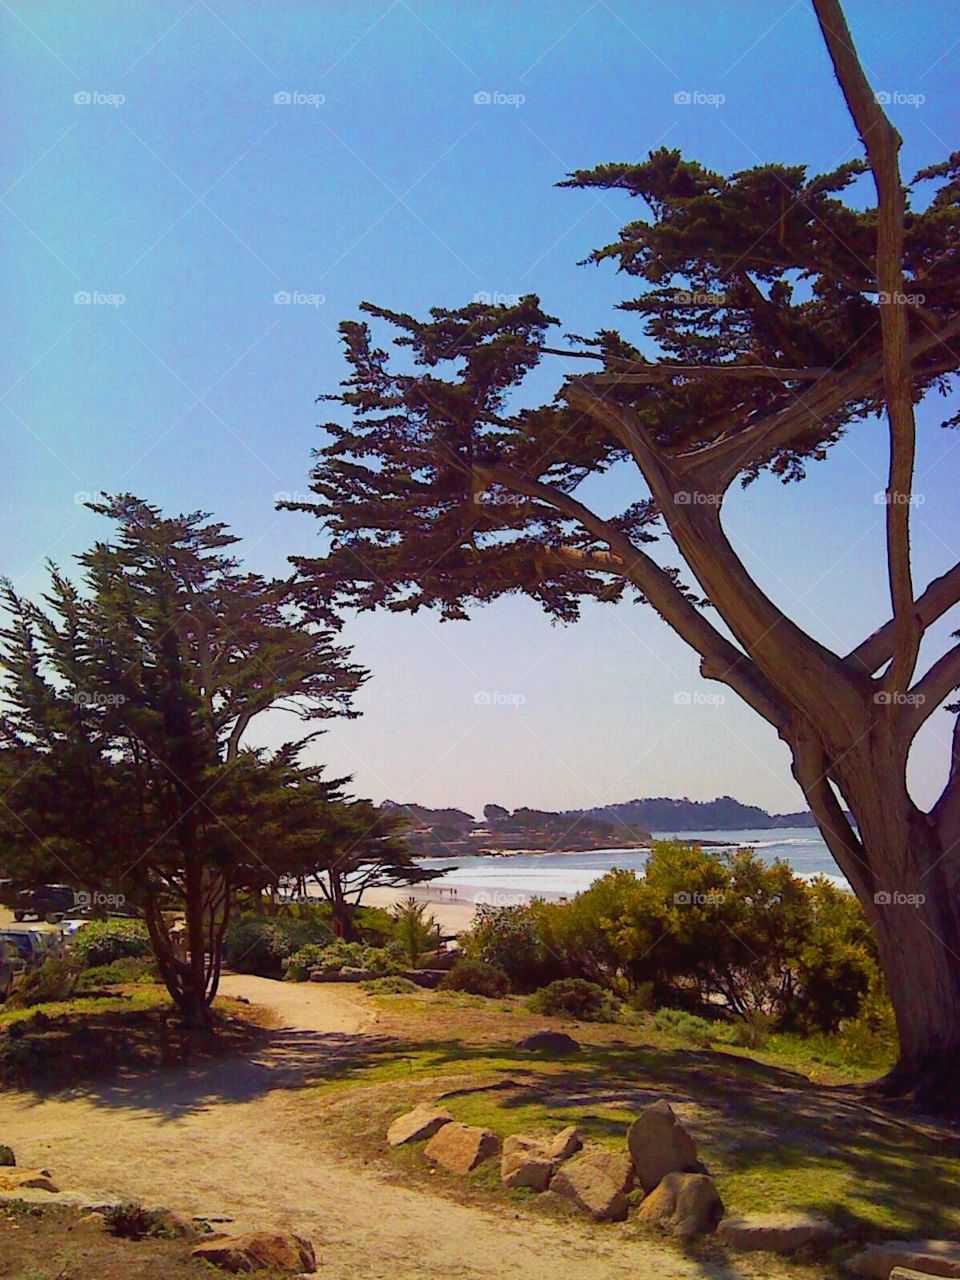 Path along Carmel beach in beautiful California.